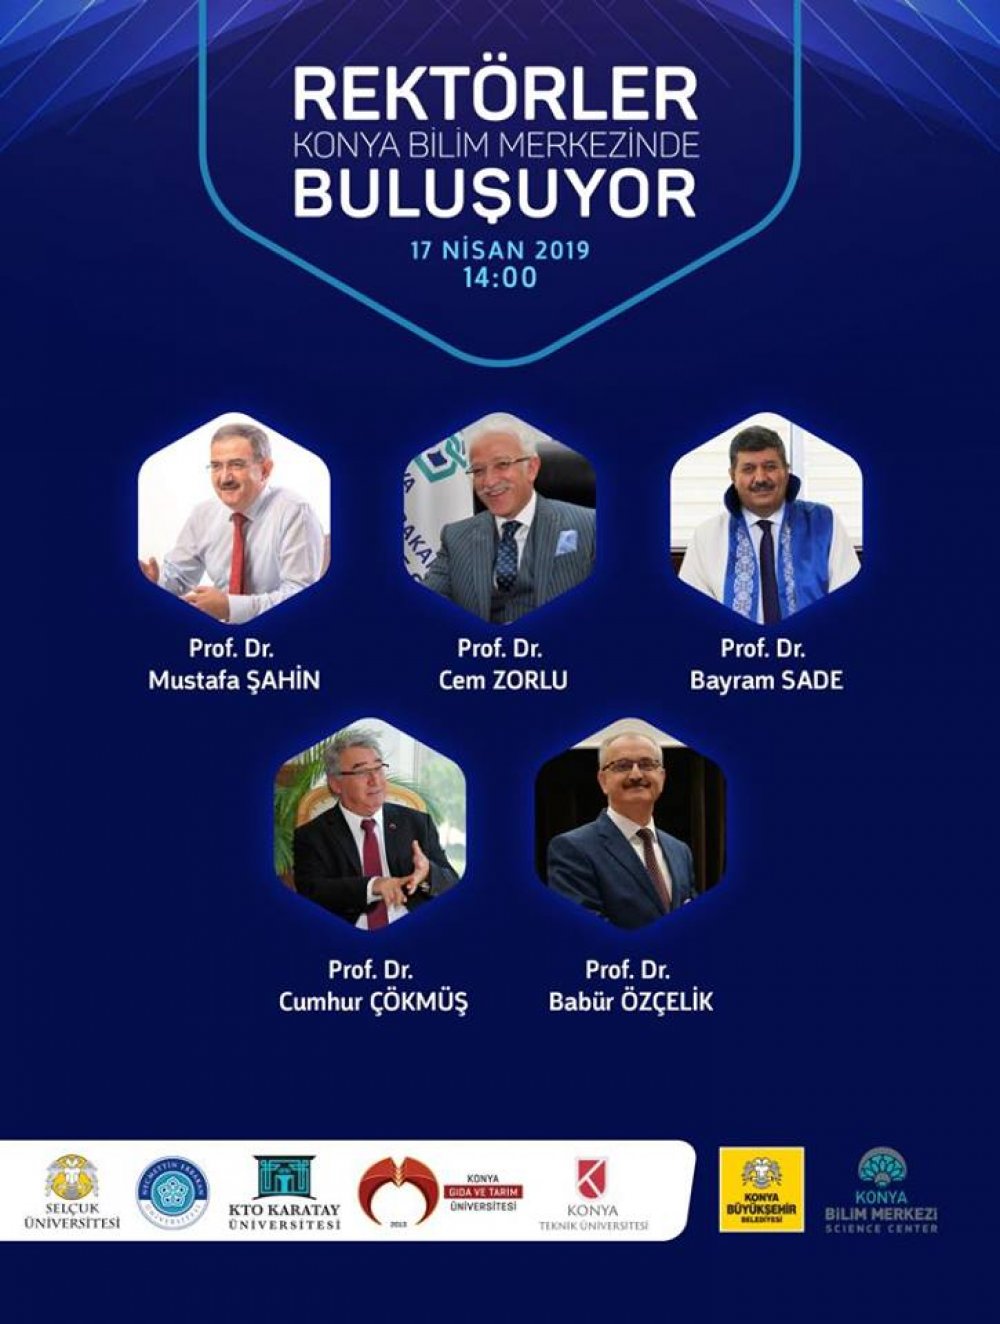 Rektörümüz Prof. Dr. Cumhur Çökmüş “Konya'da Yükseköğretim” Konulu Panele Katılacak / 17 Nisan 2019 Çarşamba